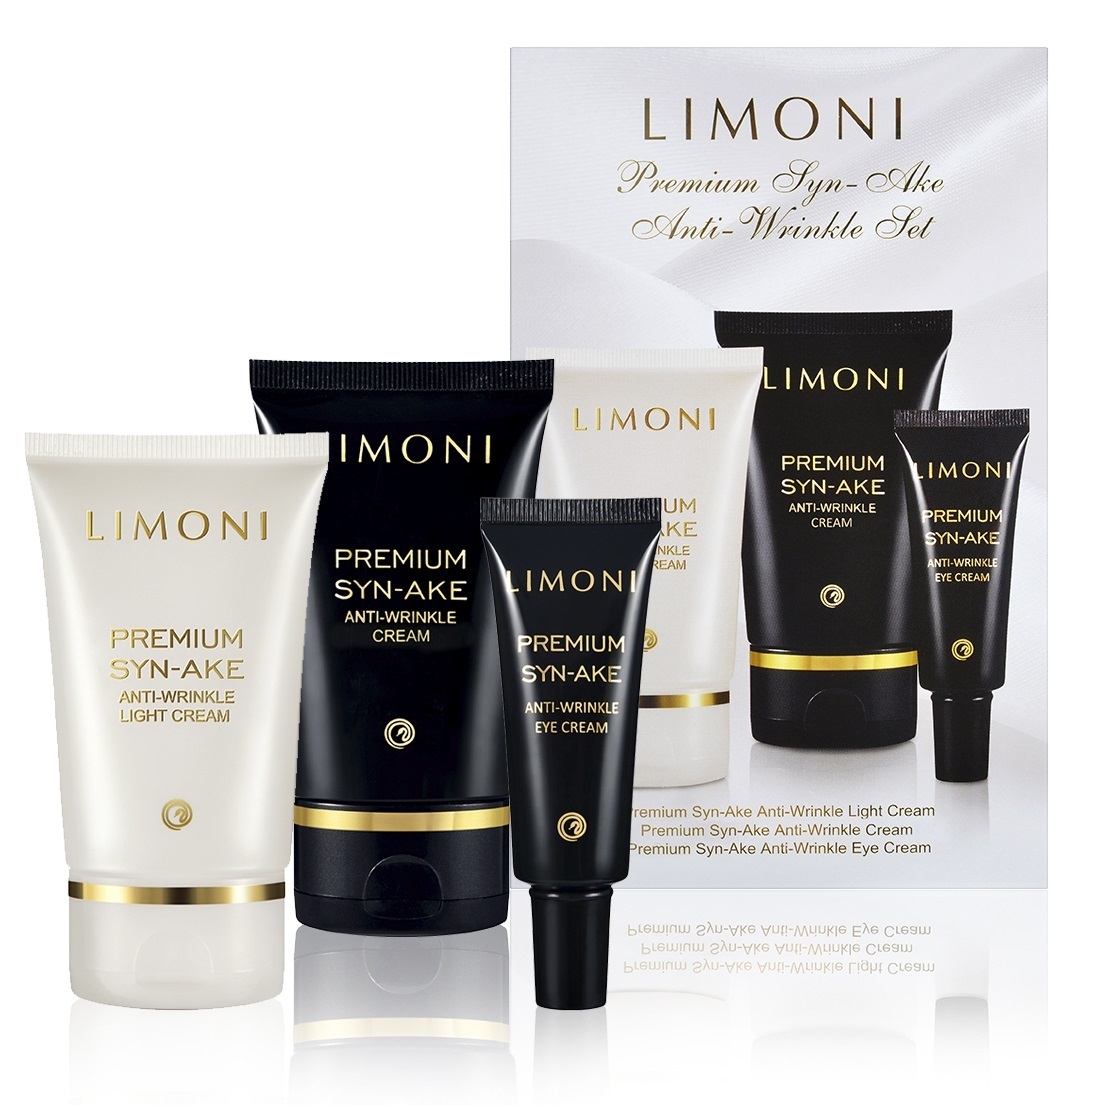 Limoni Подарочный набор Premium Syn-Ake Anti-Wrinkle Care Set: крем для лица 2х50 мл + крем для век 25 мл (Limoni, Наборы)